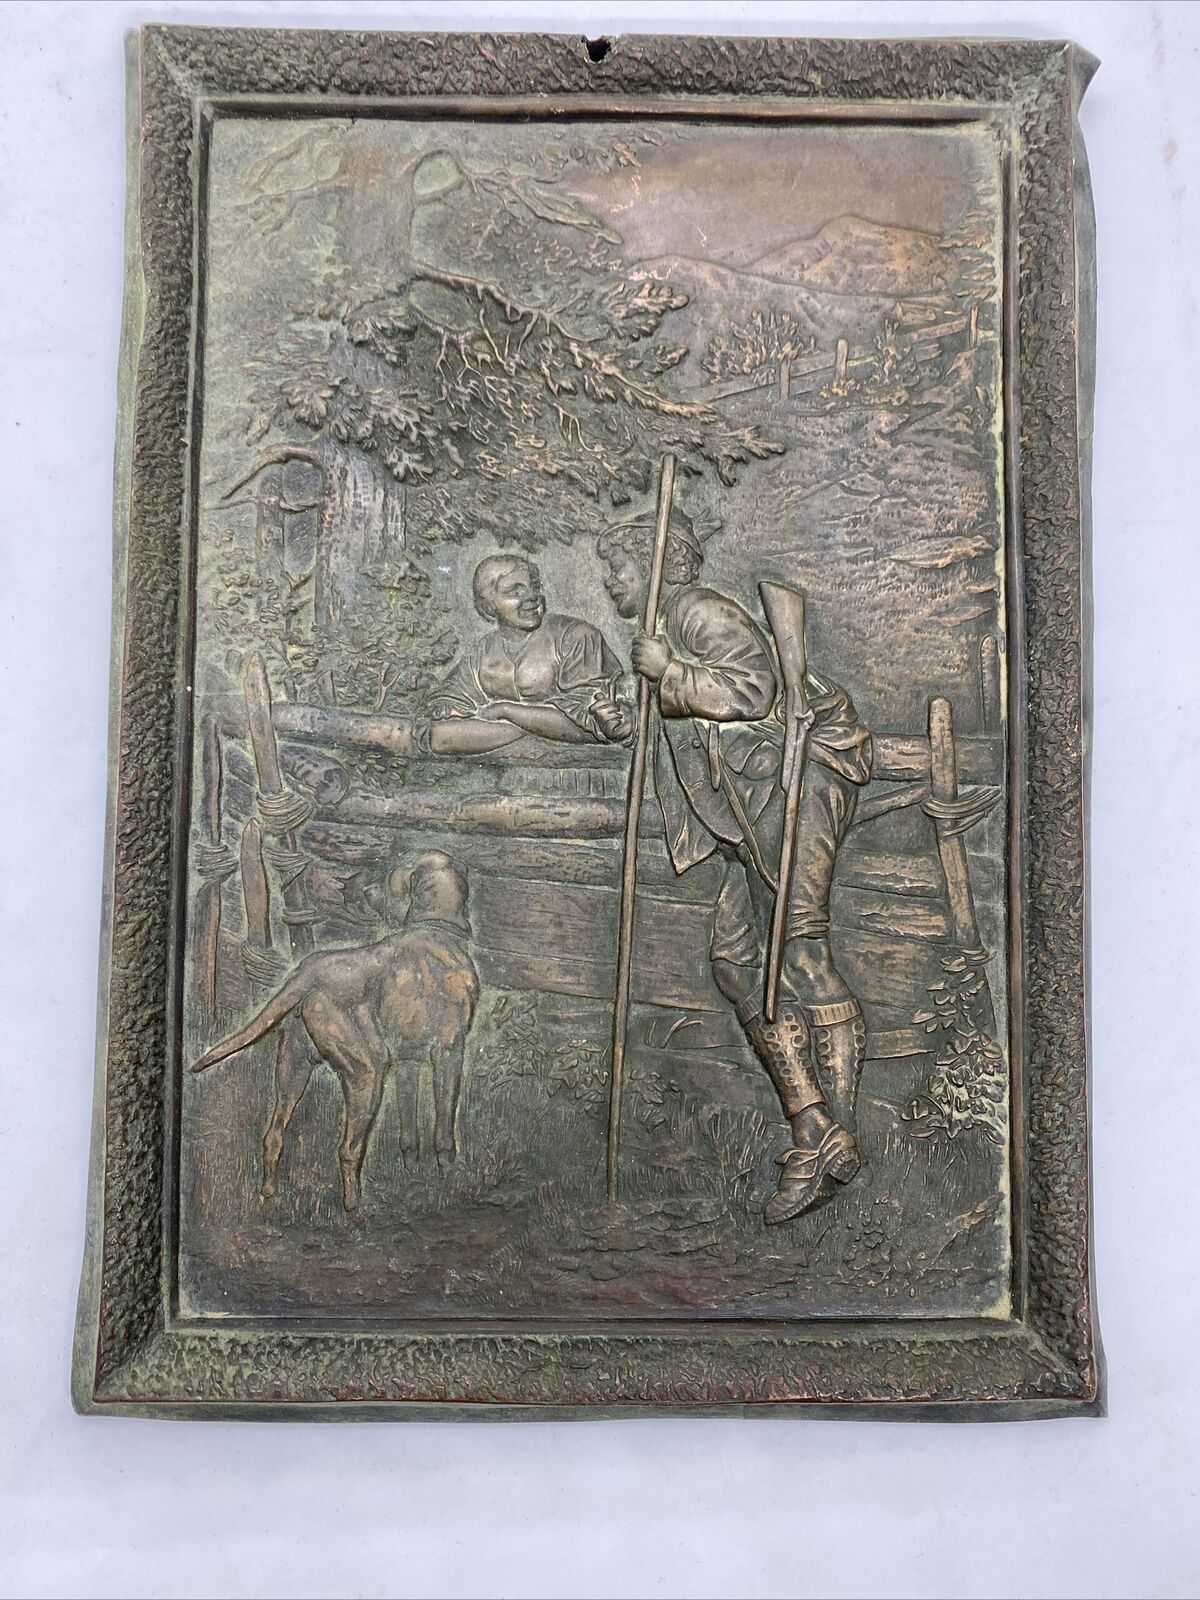 Antique Bronze Relief or Plaque Art Nouveau Late 19th Century 9.5”x7”